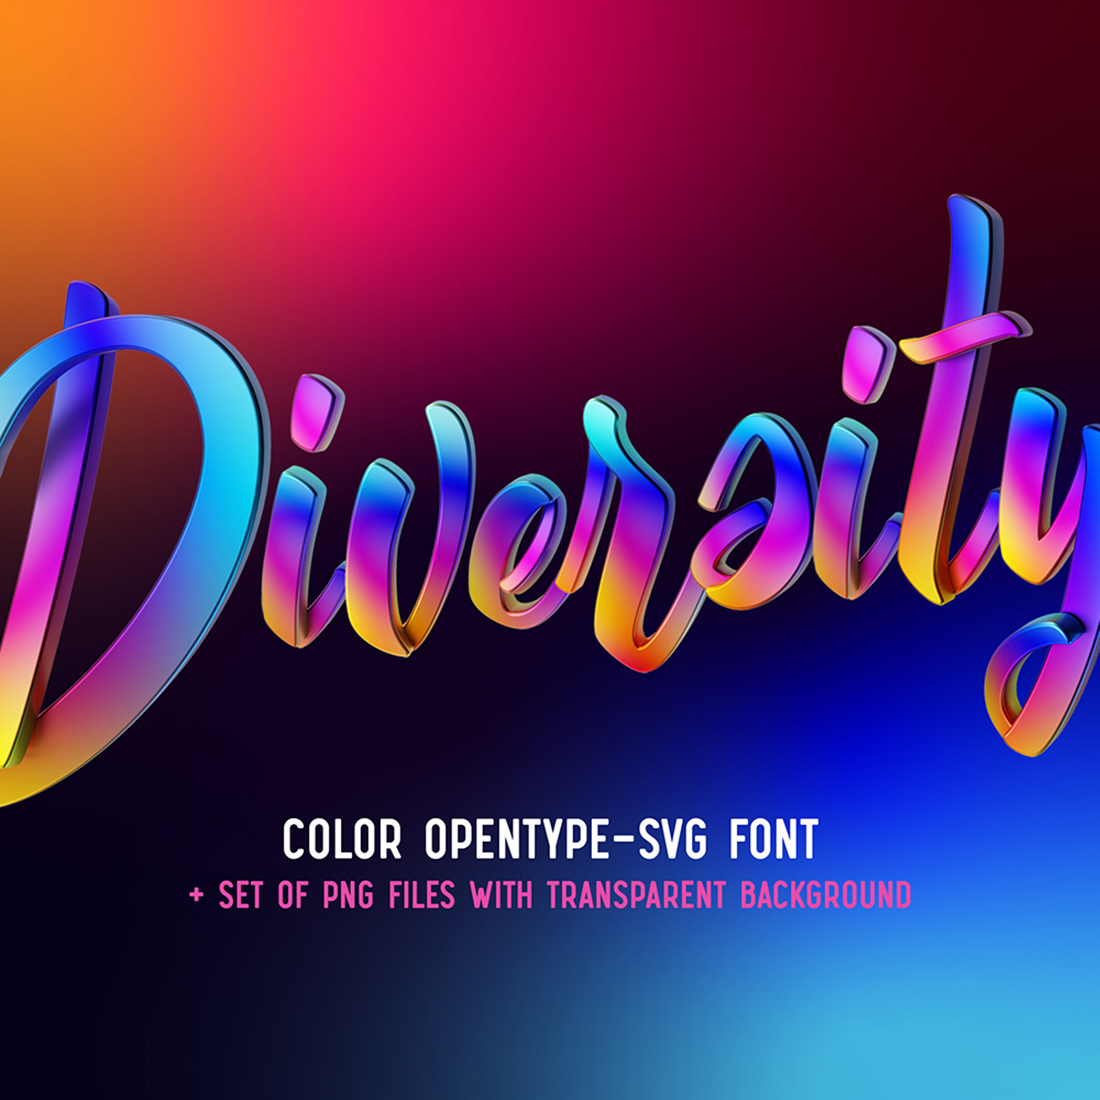 Diversity – Color Bitmap Font cover image.